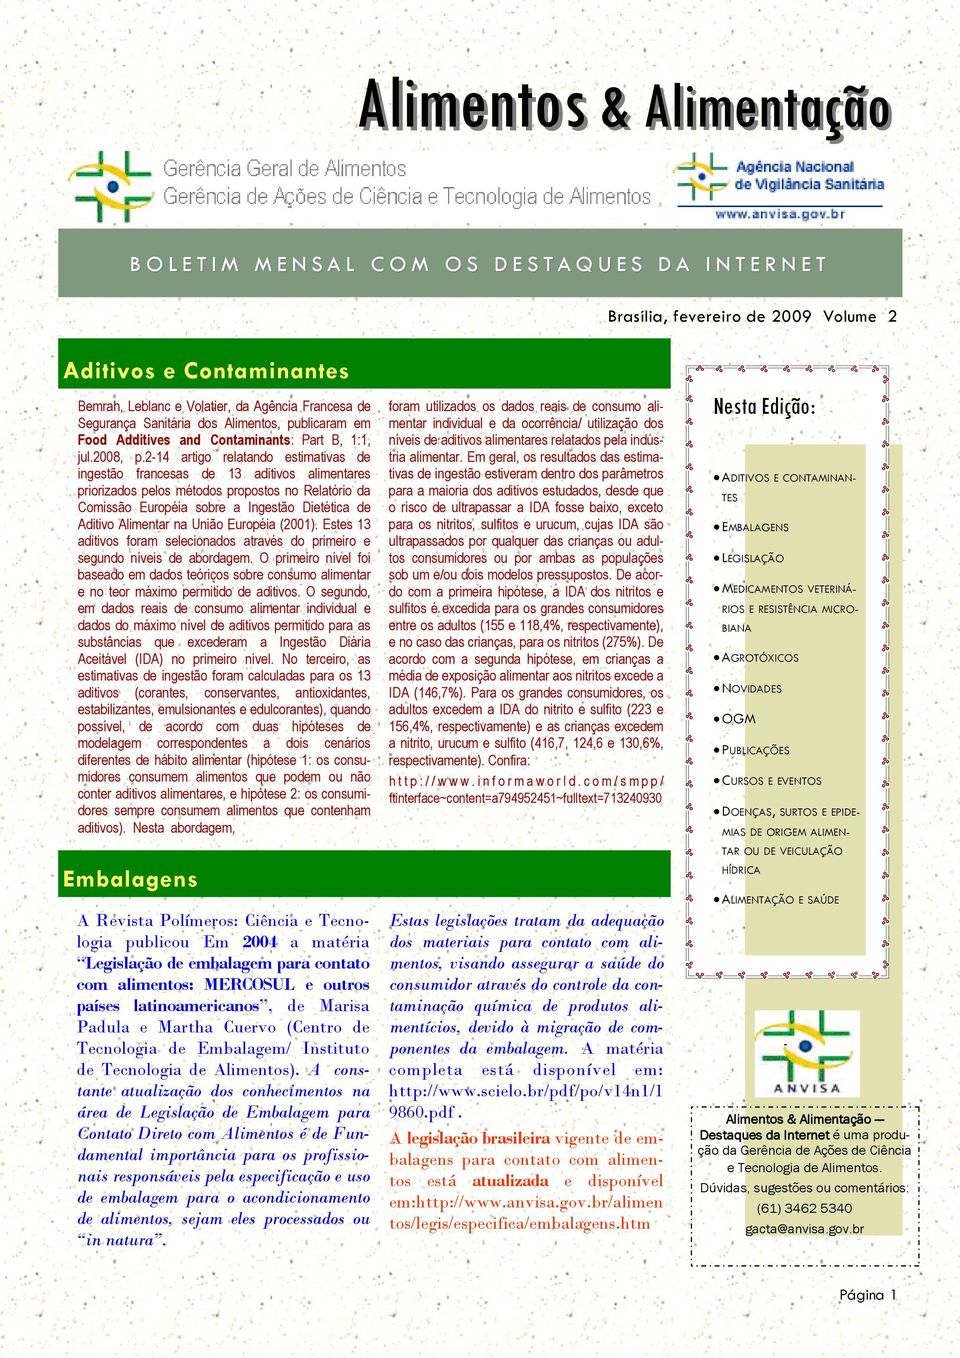 2-14 artigo relatando estimativas de ingestão francesas de 13 aditivos alimentares priorizados pelos métodos propostos no Relatório da Comissão Européia sobre a Ingestão Dietética de Aditivo